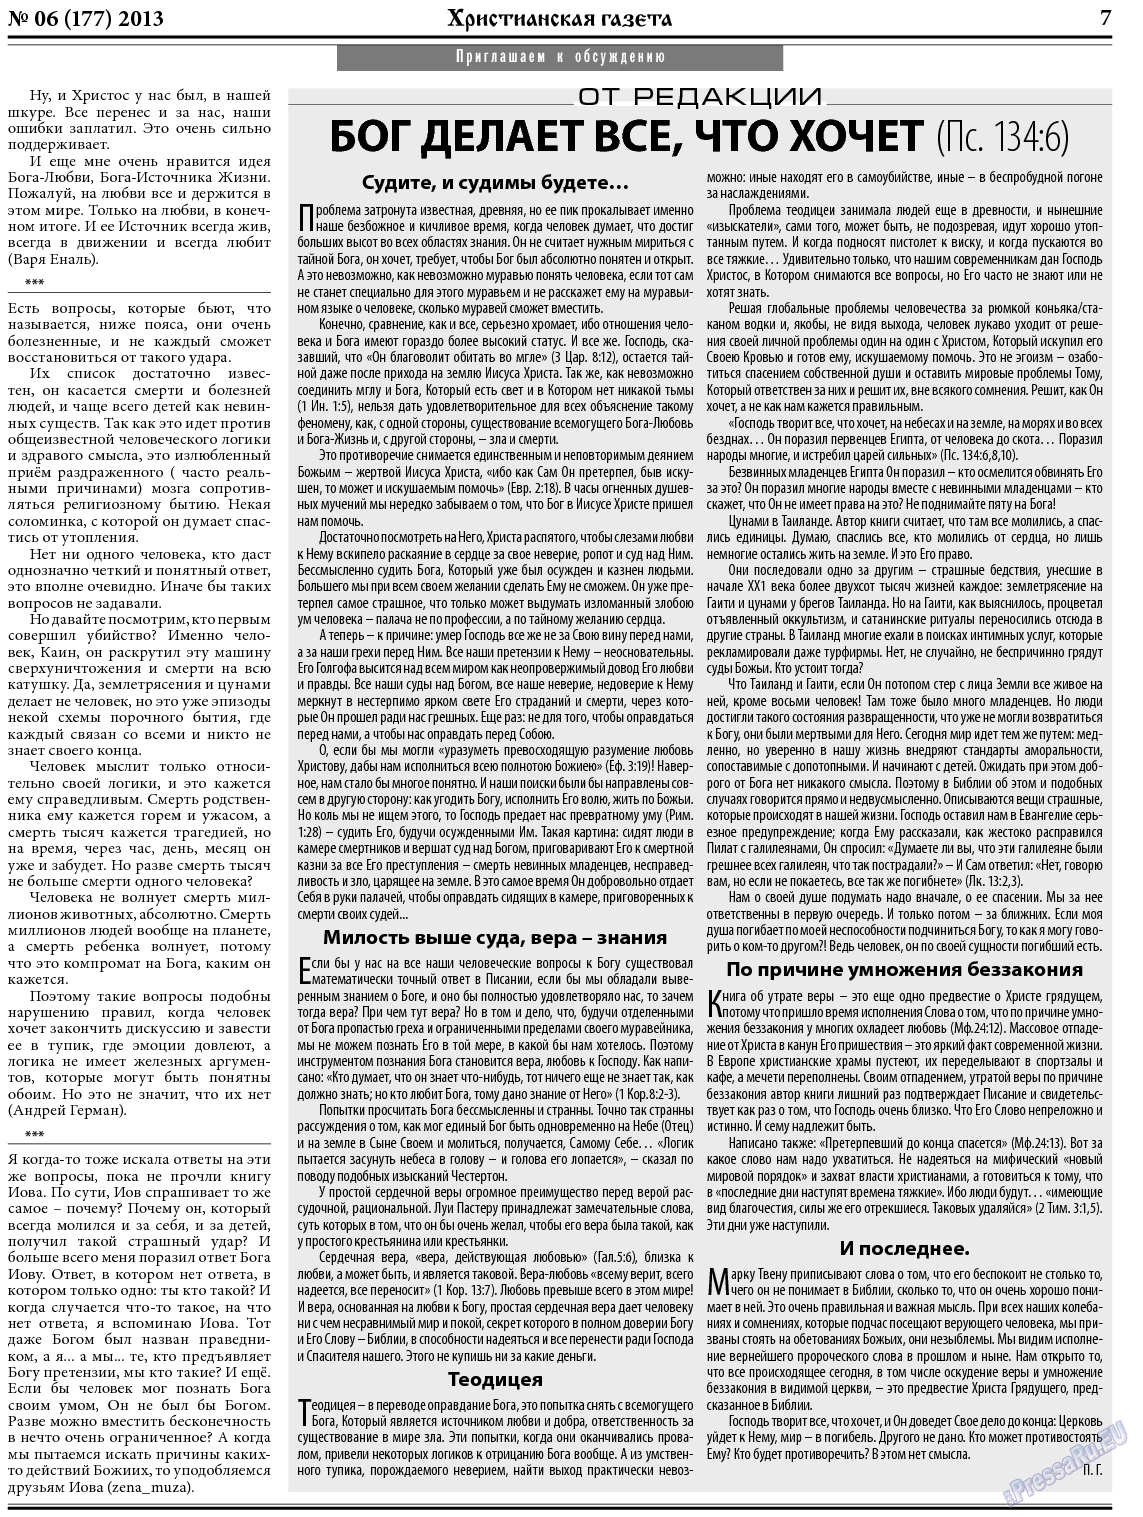 Христианская газета, газета. 2013 №6 стр.7